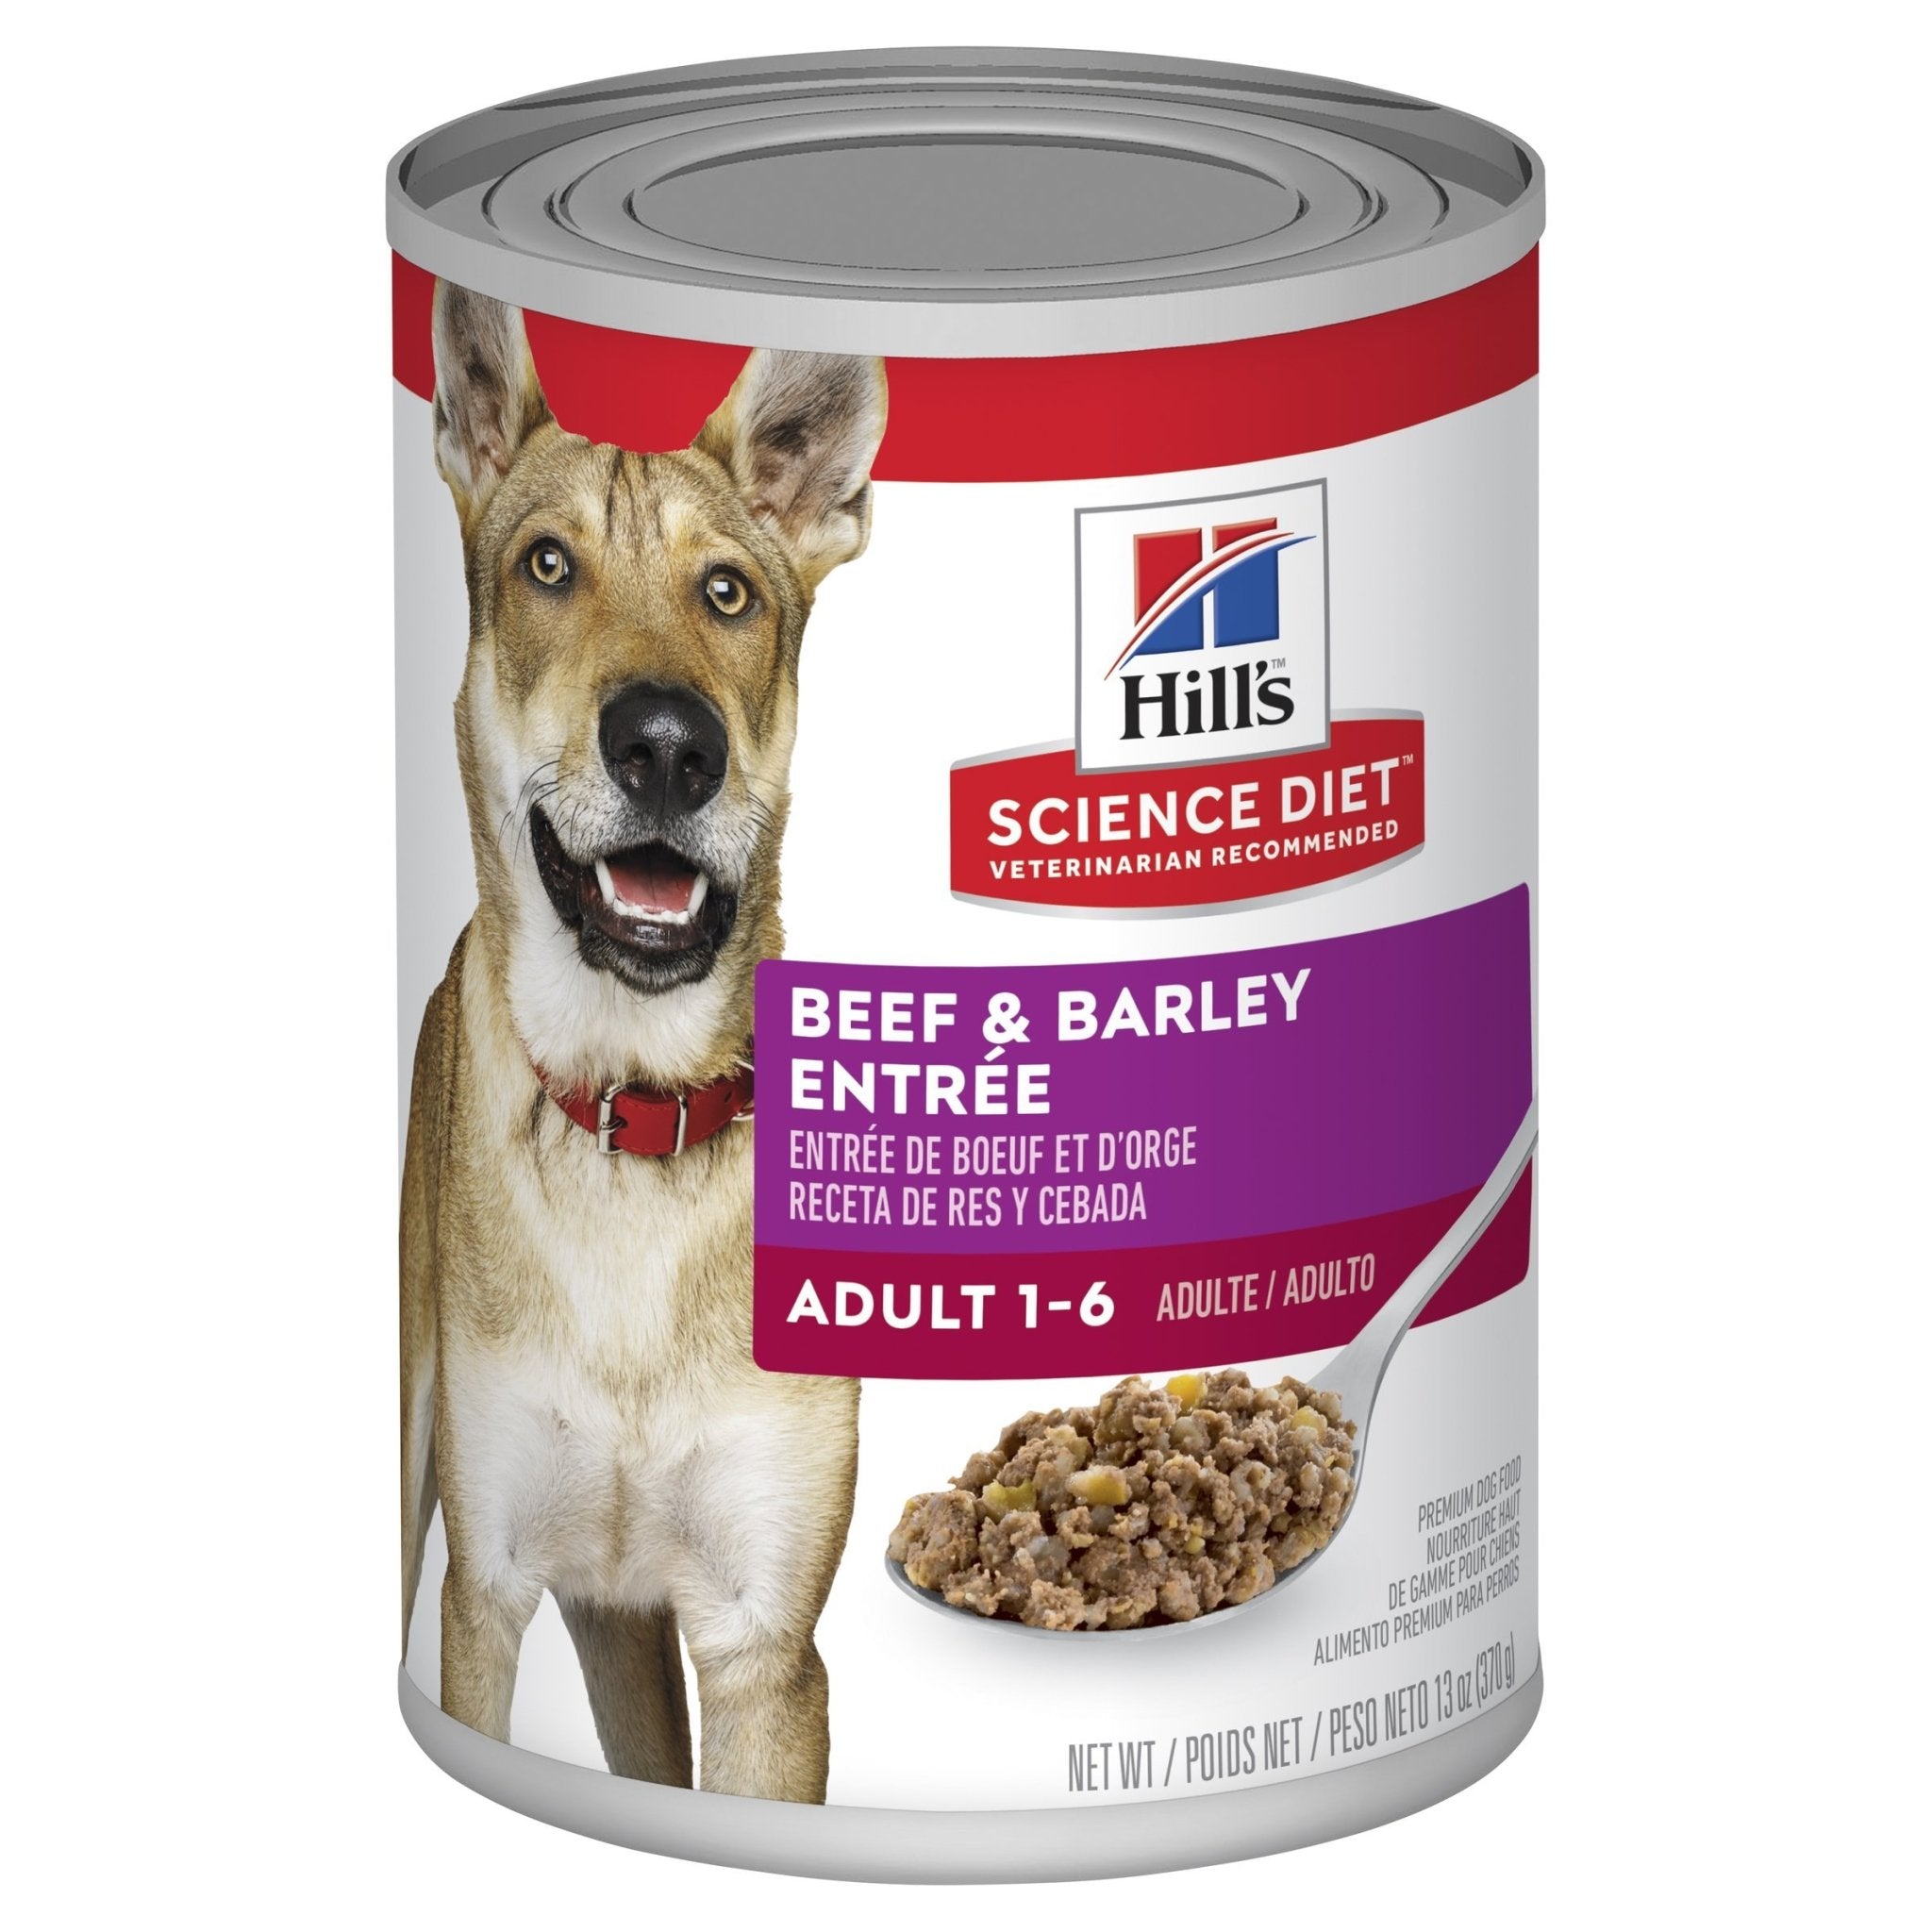 Hills Science Diet Adult Beef & Barley Entrée Canned Dog Food, 370g, 12 Pack